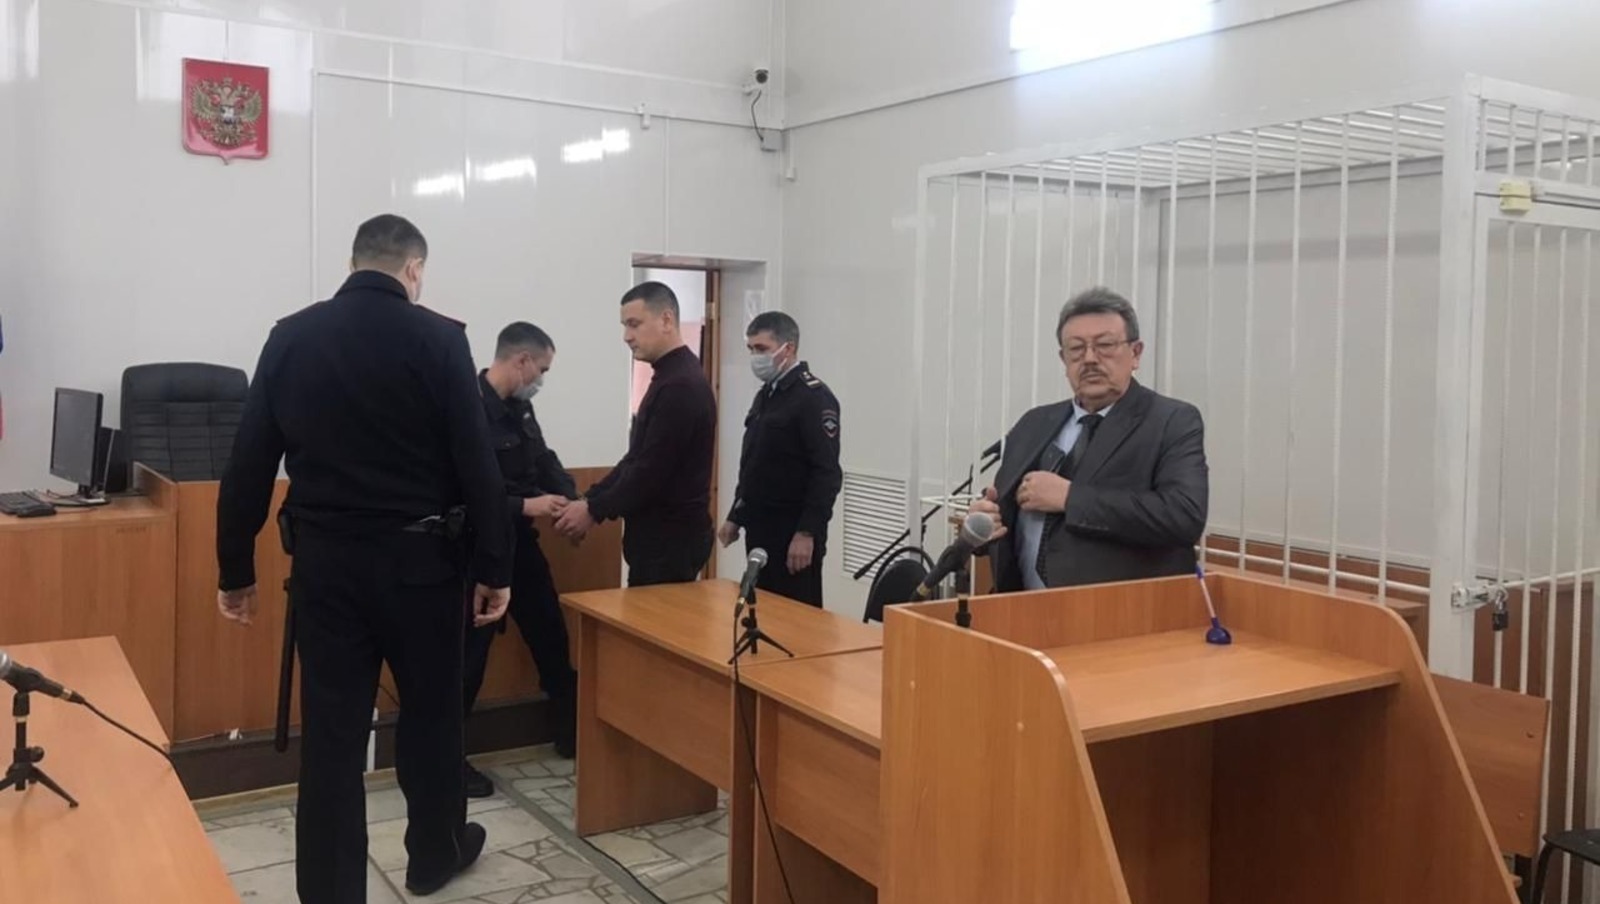 Бывший замглавы администрации района в Башкирии осужден к 4 годам колонии строгого режима за взятку